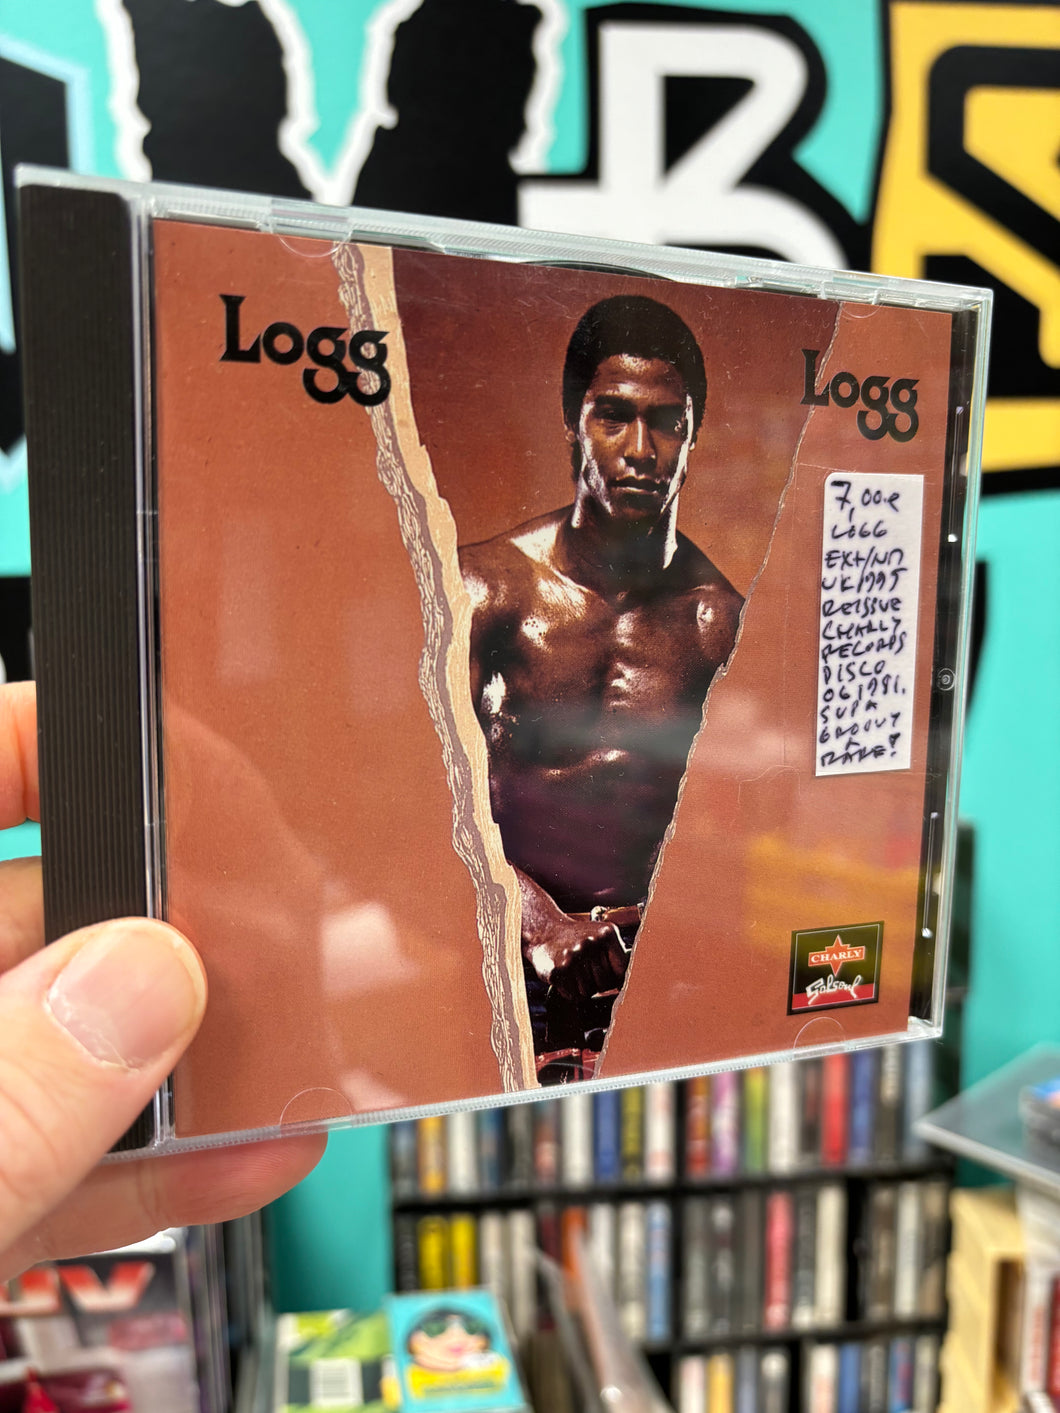 Logg: Logg, CD, reissue, UK 1995